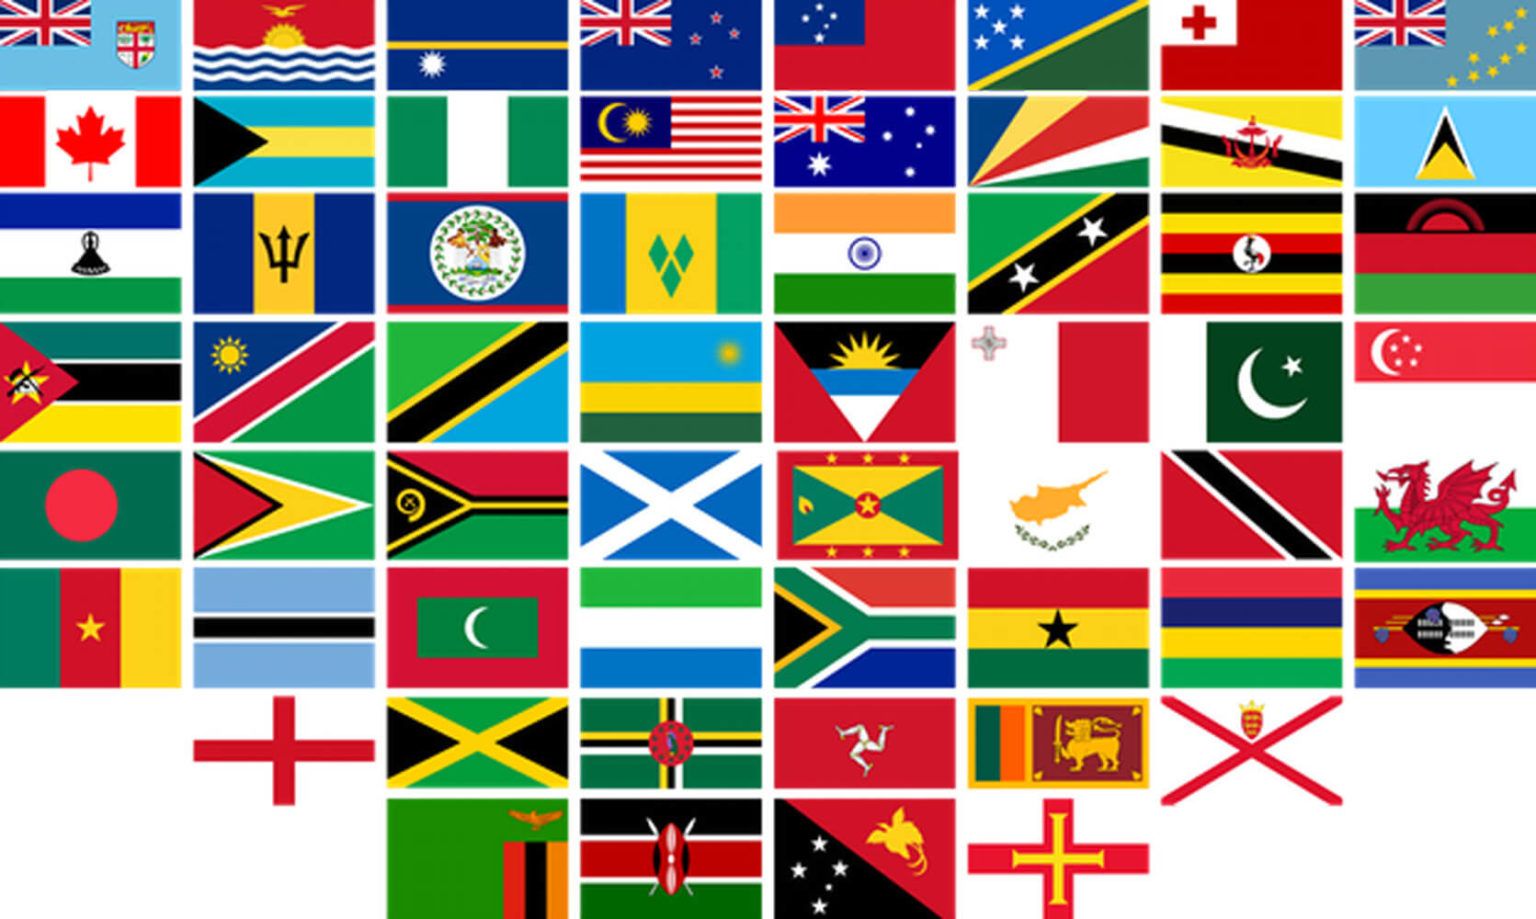 Inilah daftar 72 negara yang berpartisiPasi dalam Commonwealth Games 2022.